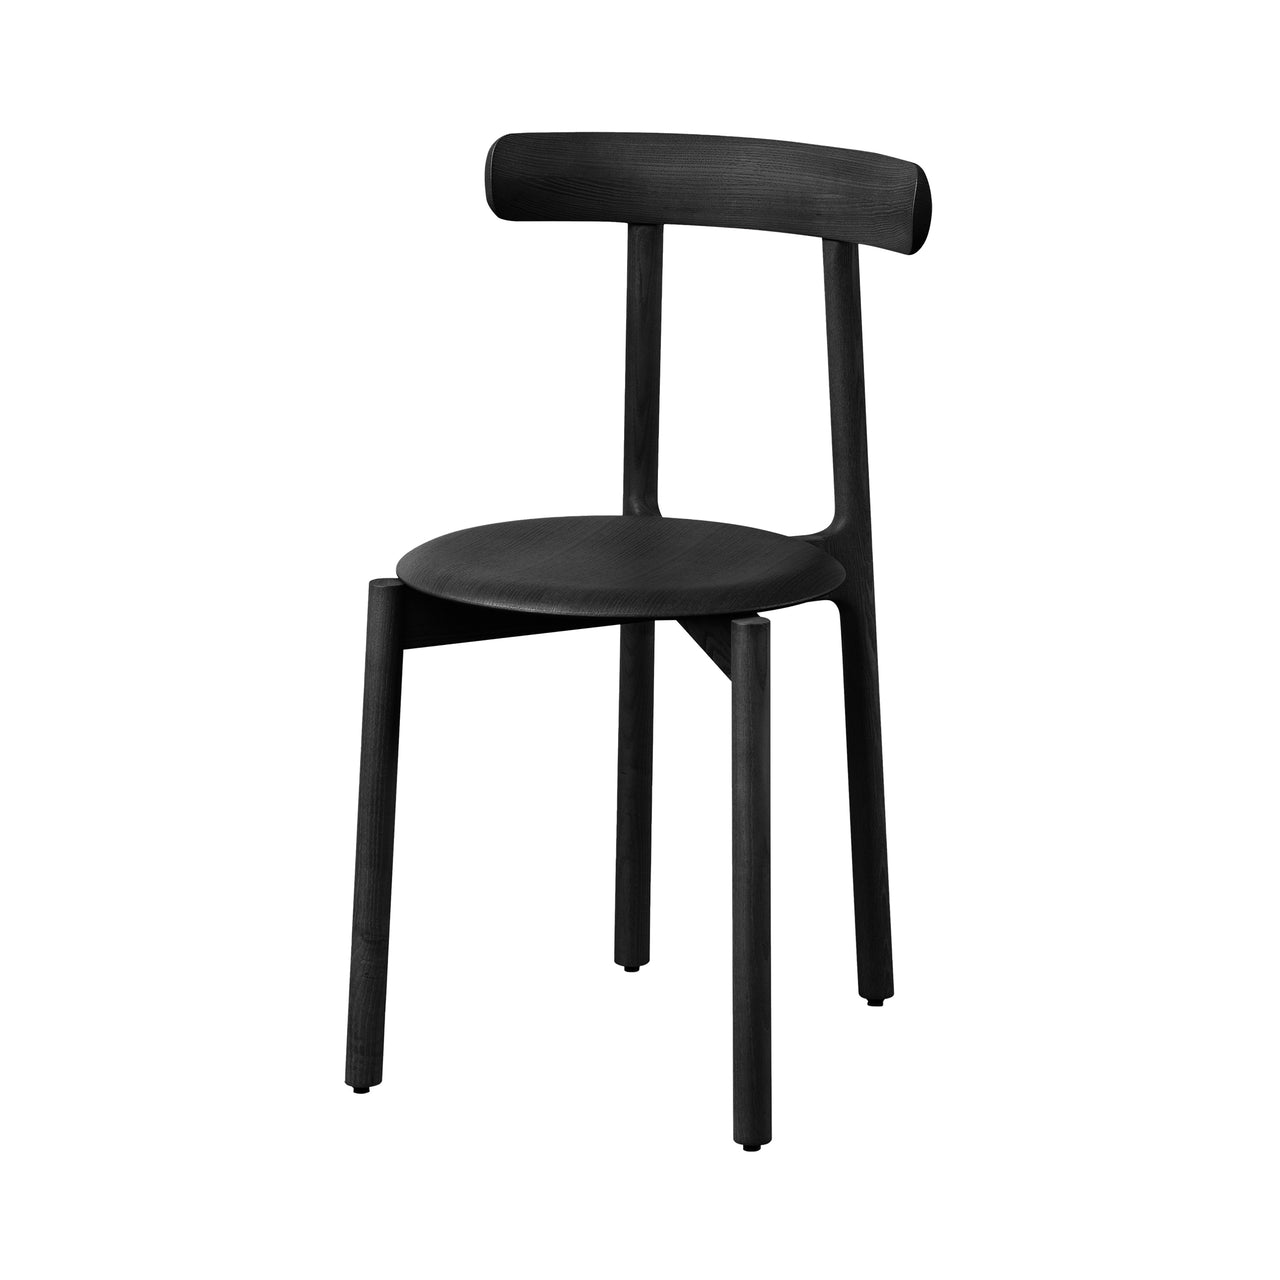 Bice Chair: Black Ash